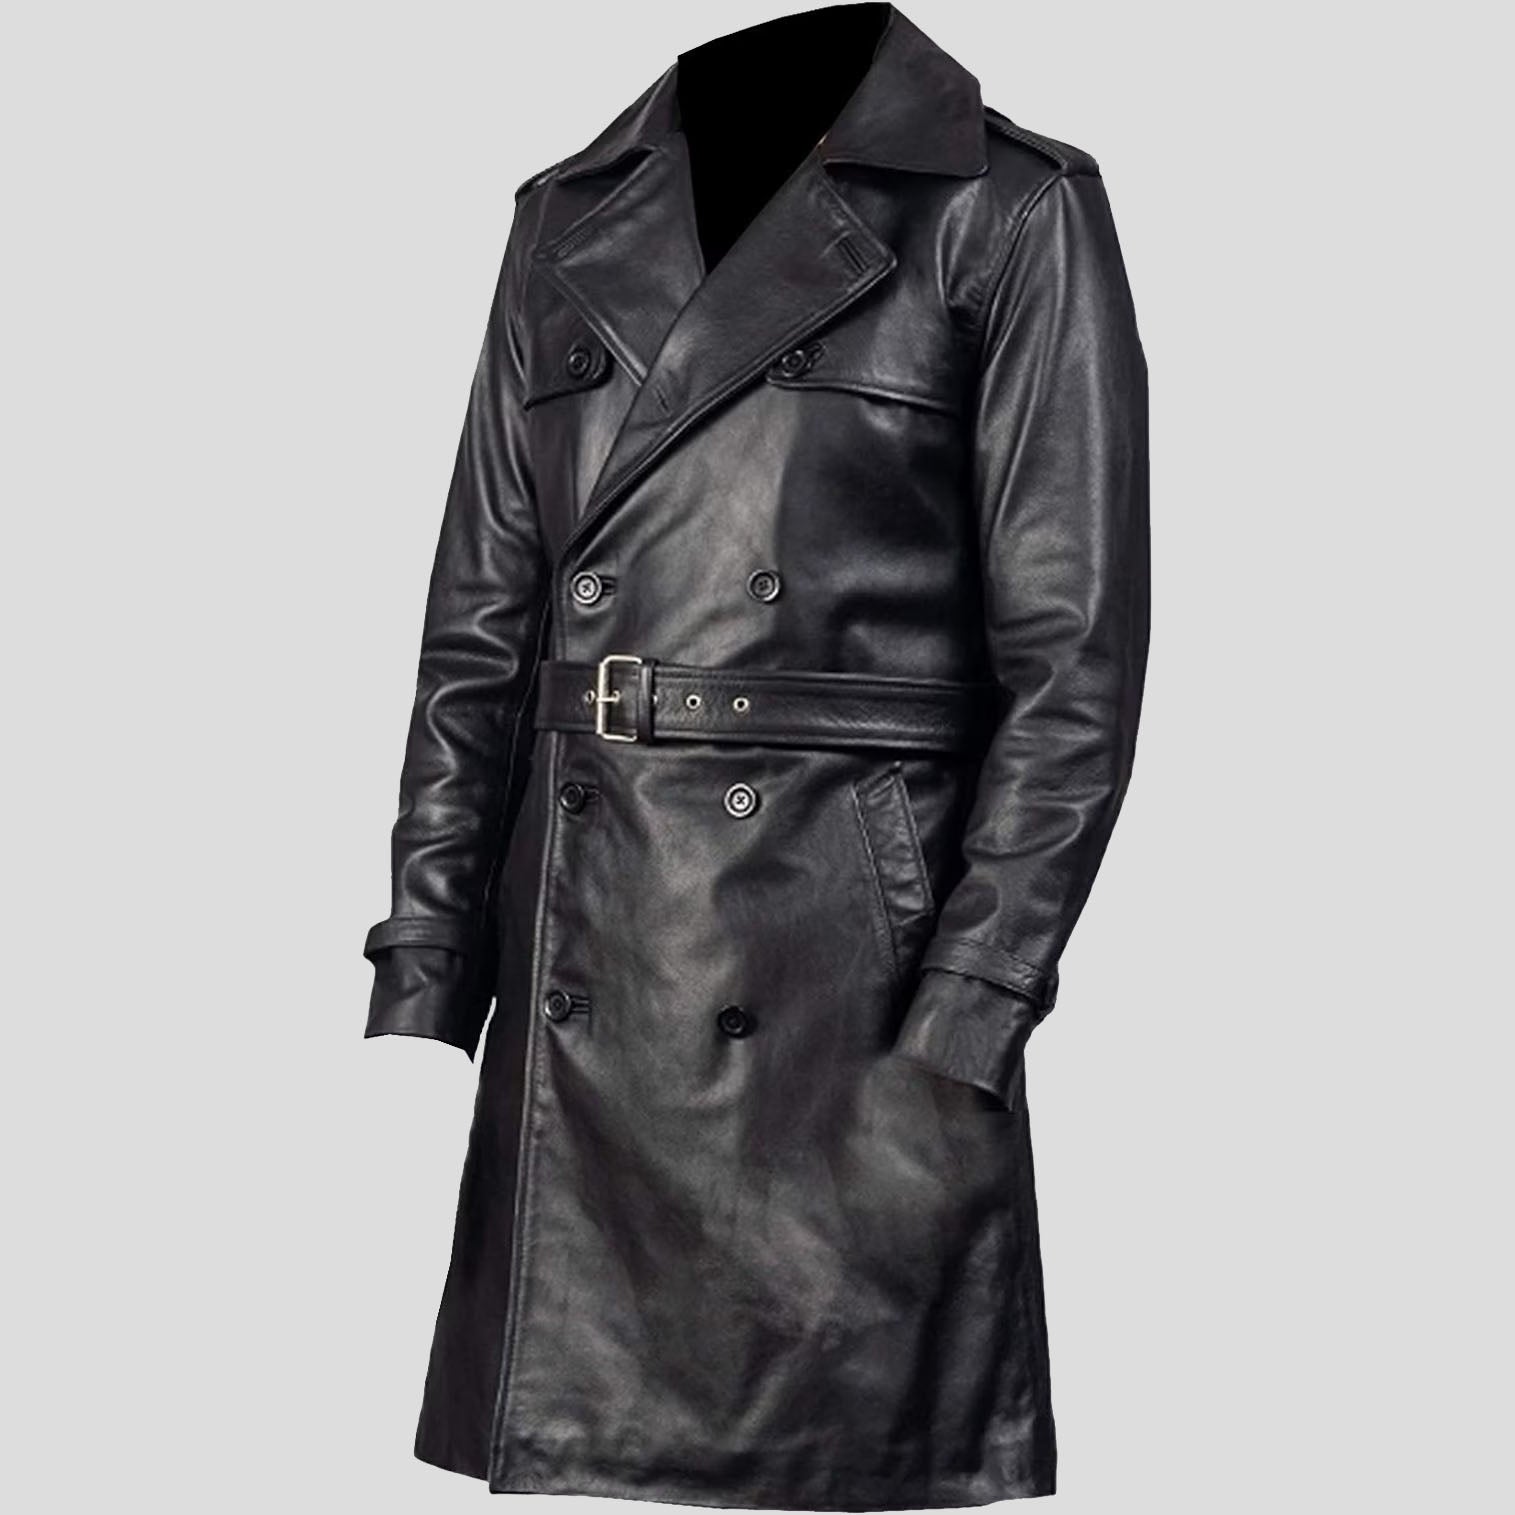 Premium Men's Cow Leather Trench Coat